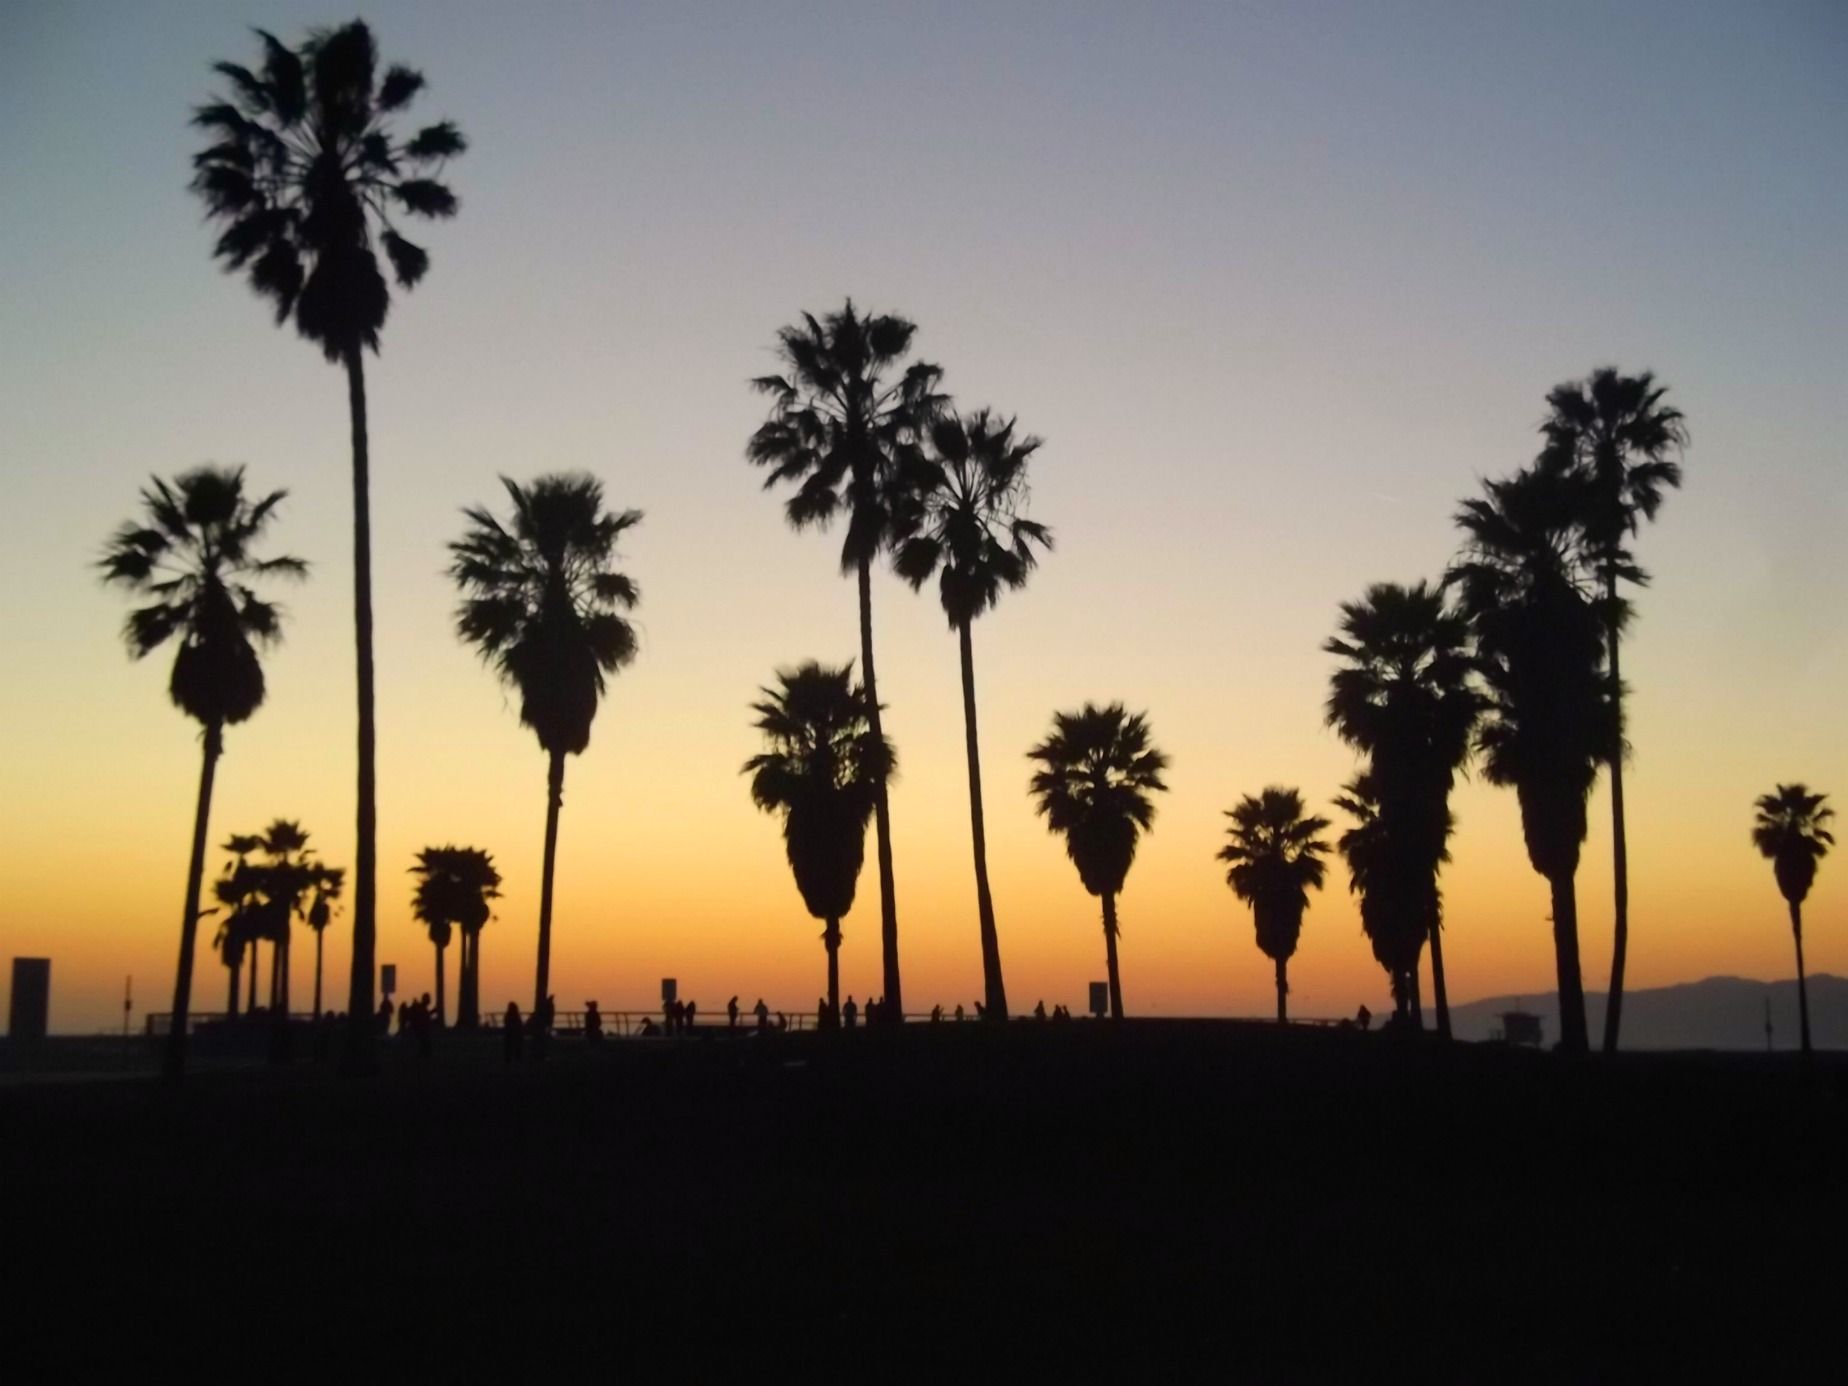 عکس از درختان کوکوس و افق غروب آفتاب در شهر لس آنجلس آمریکا